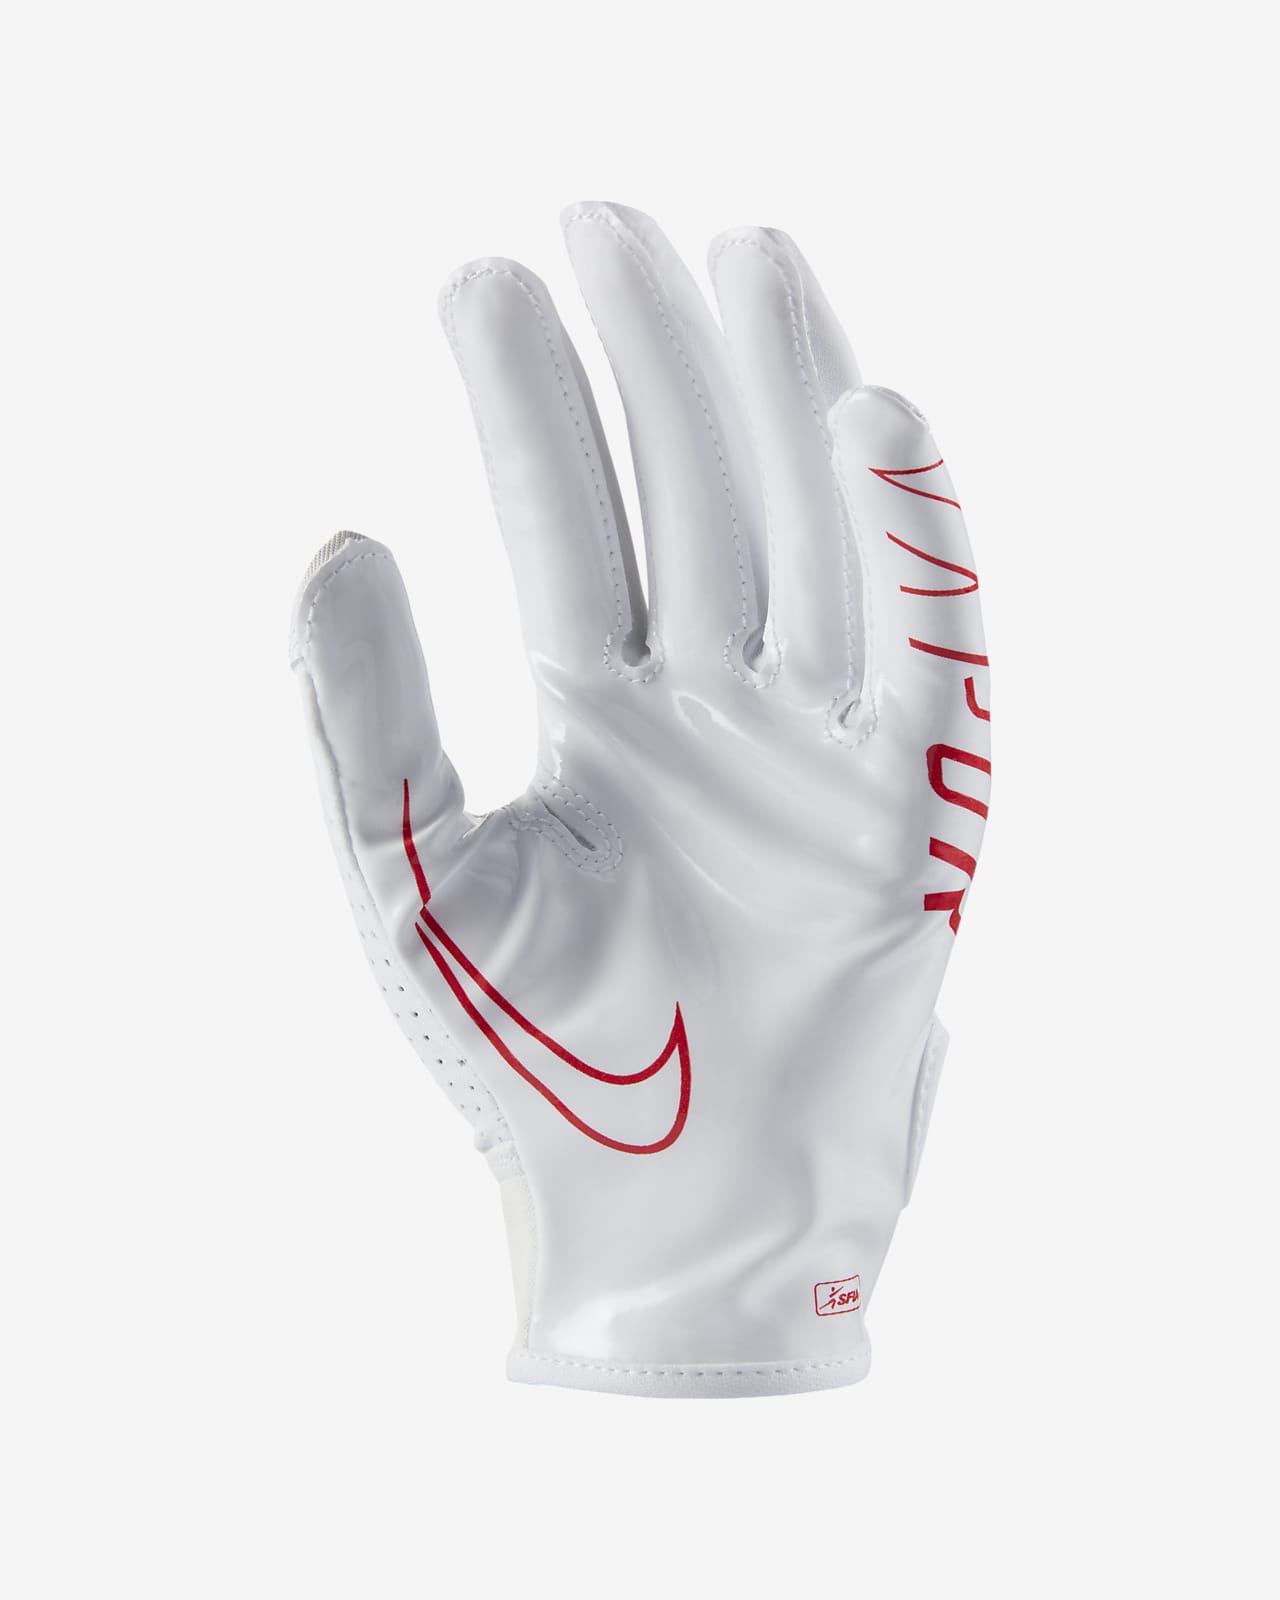 nike vapor gloves 6.0